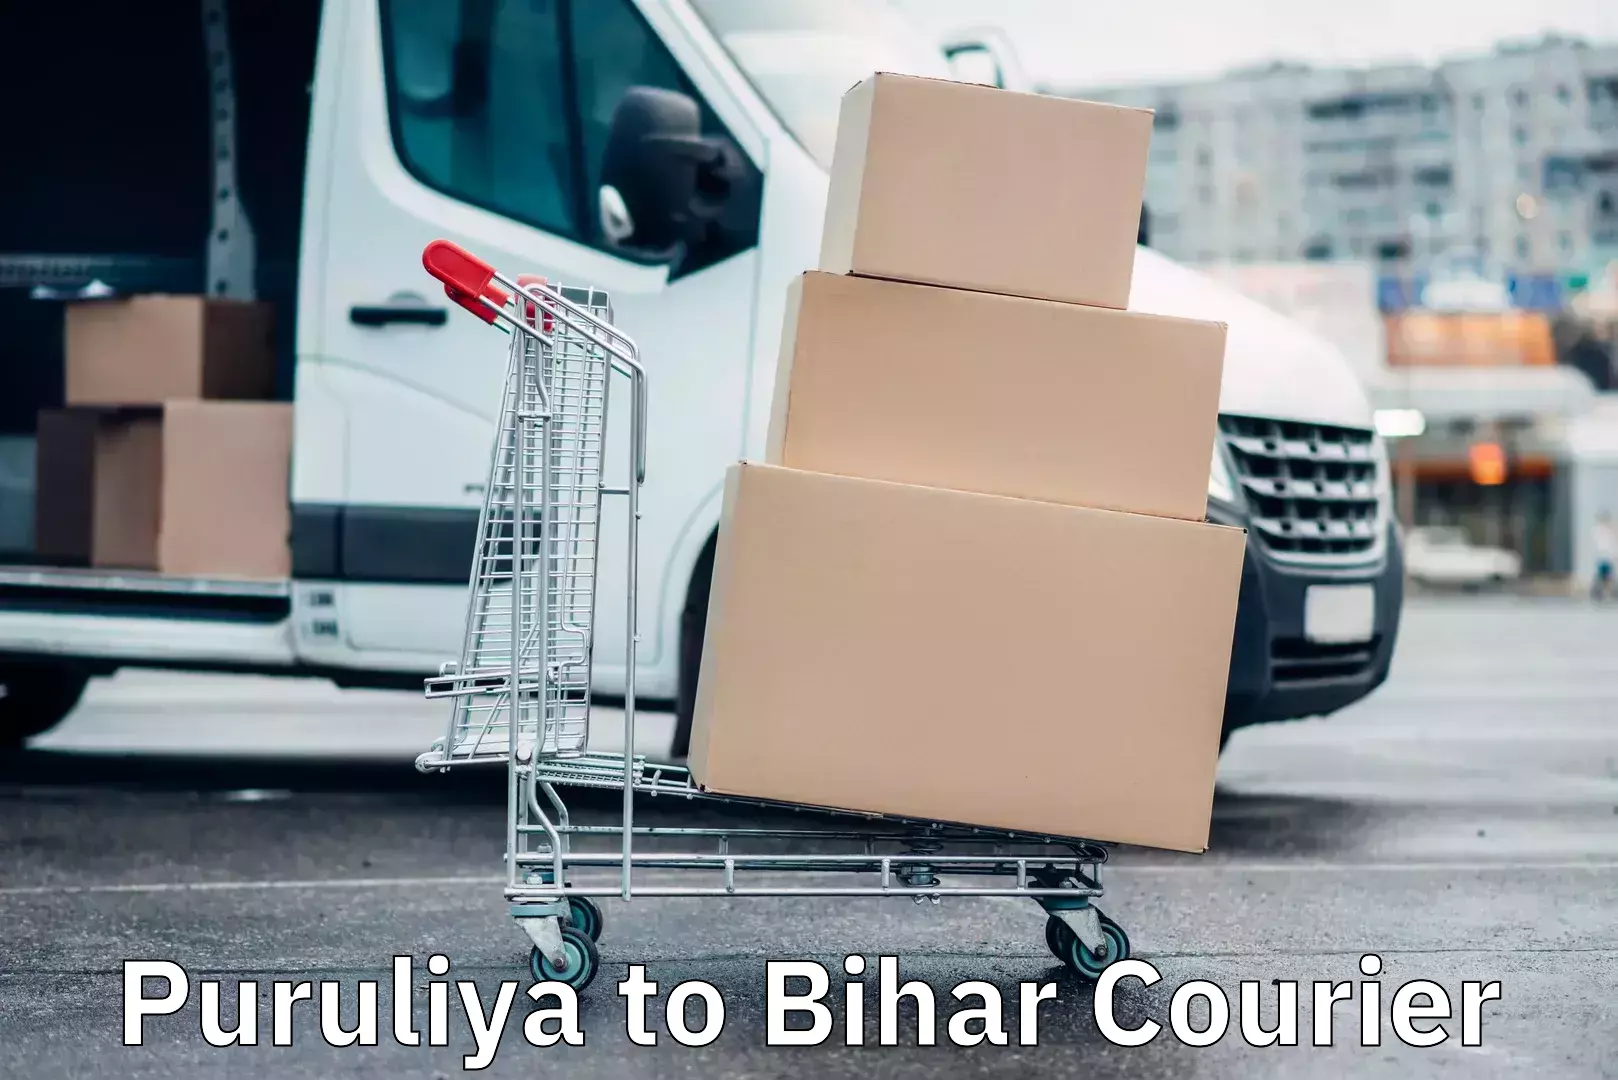 Cargo courier service Puruliya to Bihar